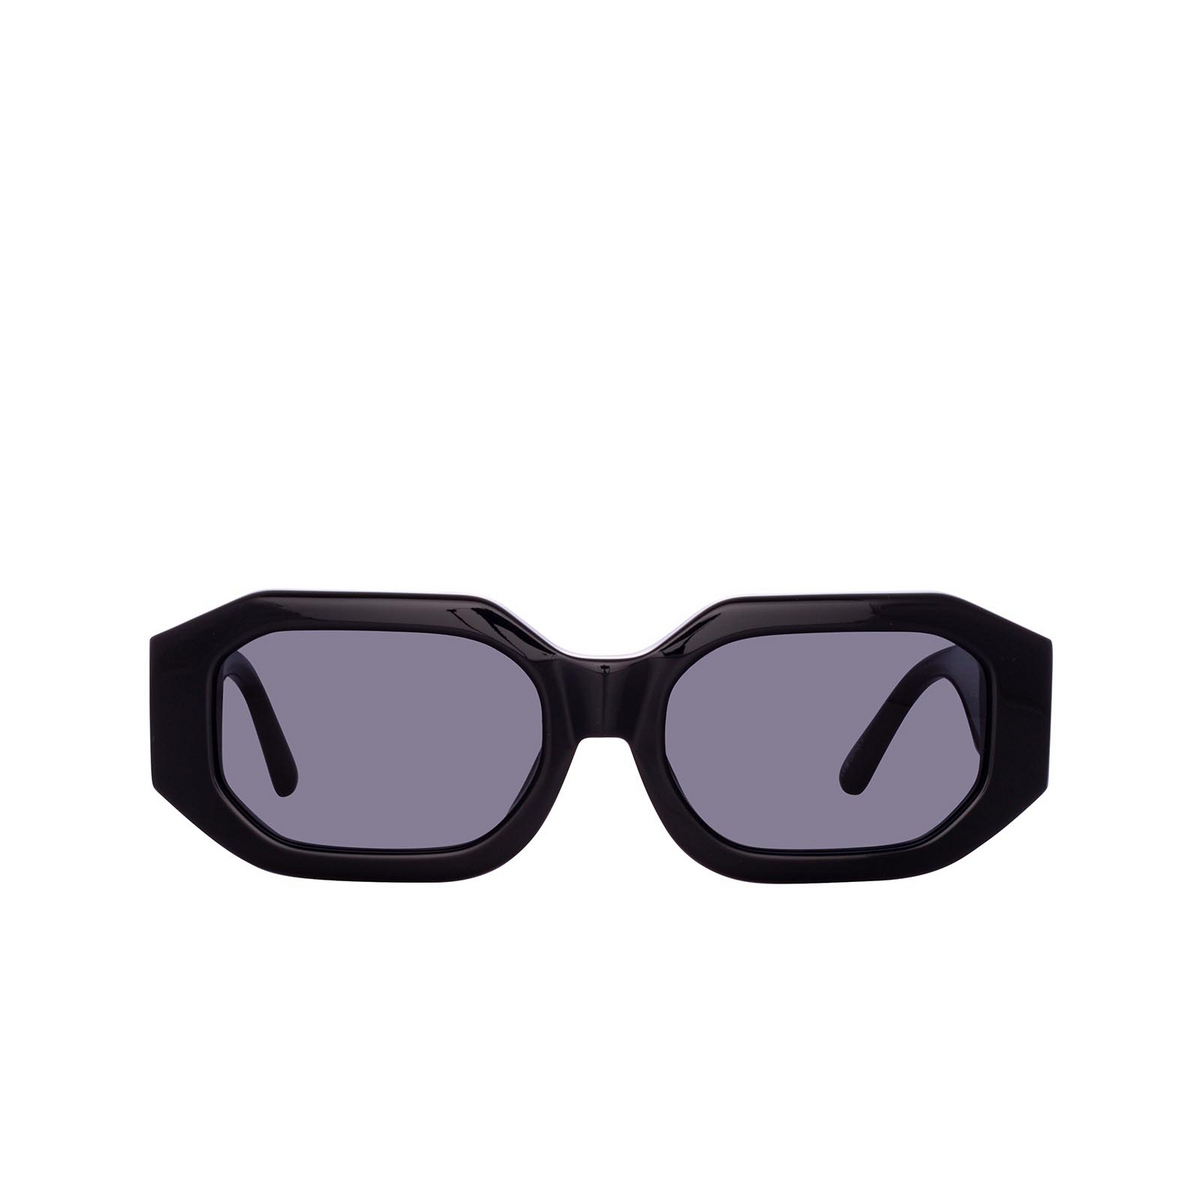 Blake'' black sunglasses for Women